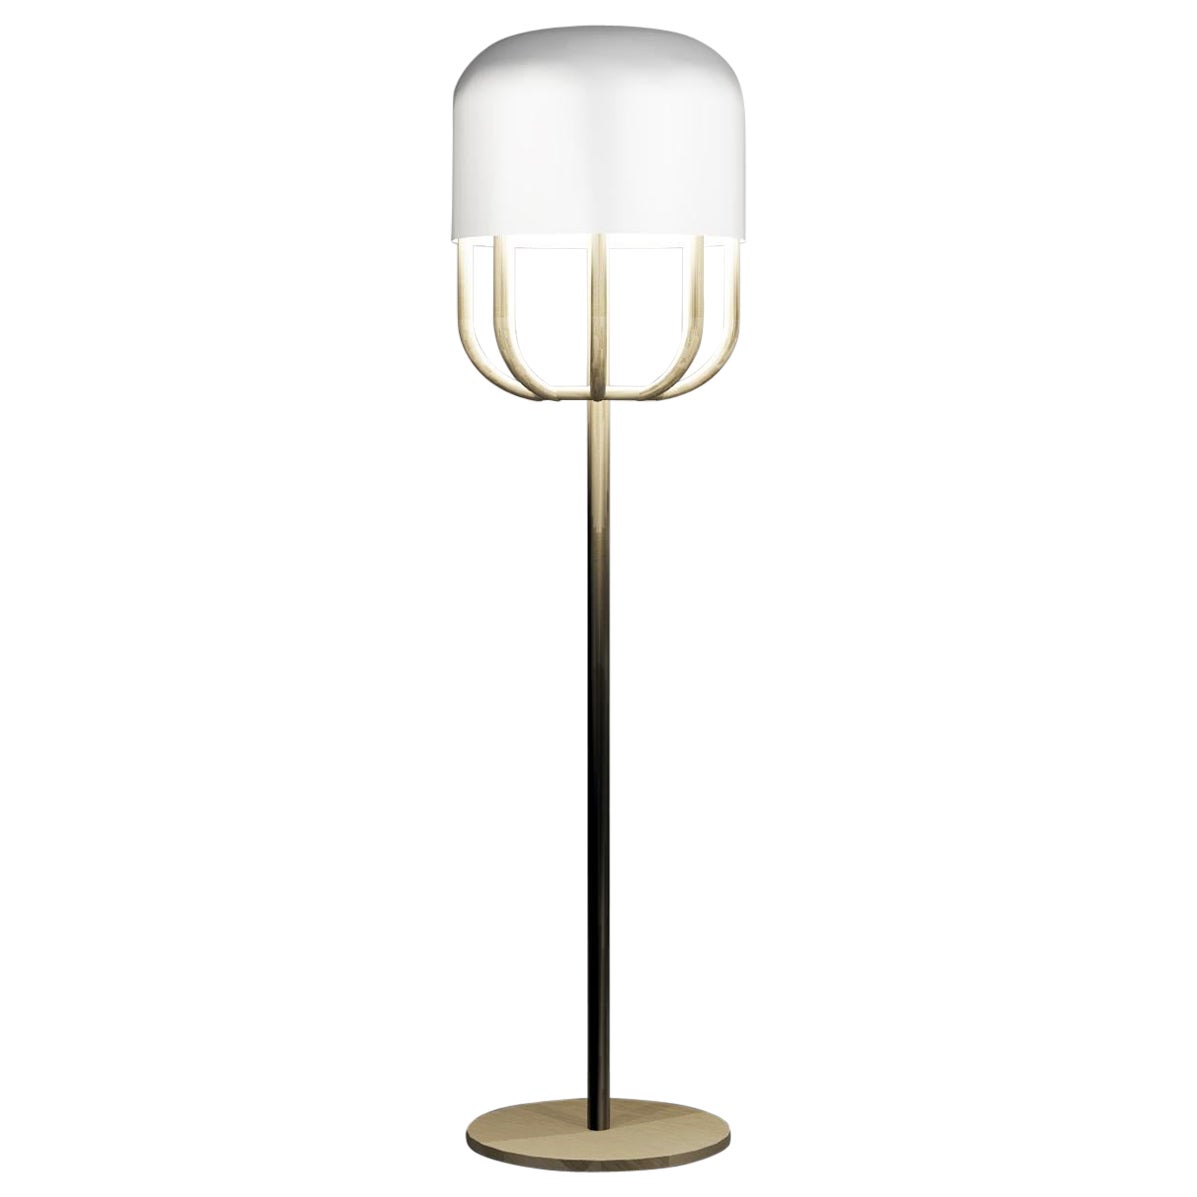 Imagin Capsule Floor Lamp in Powder-coated Metal and Brushed Brass